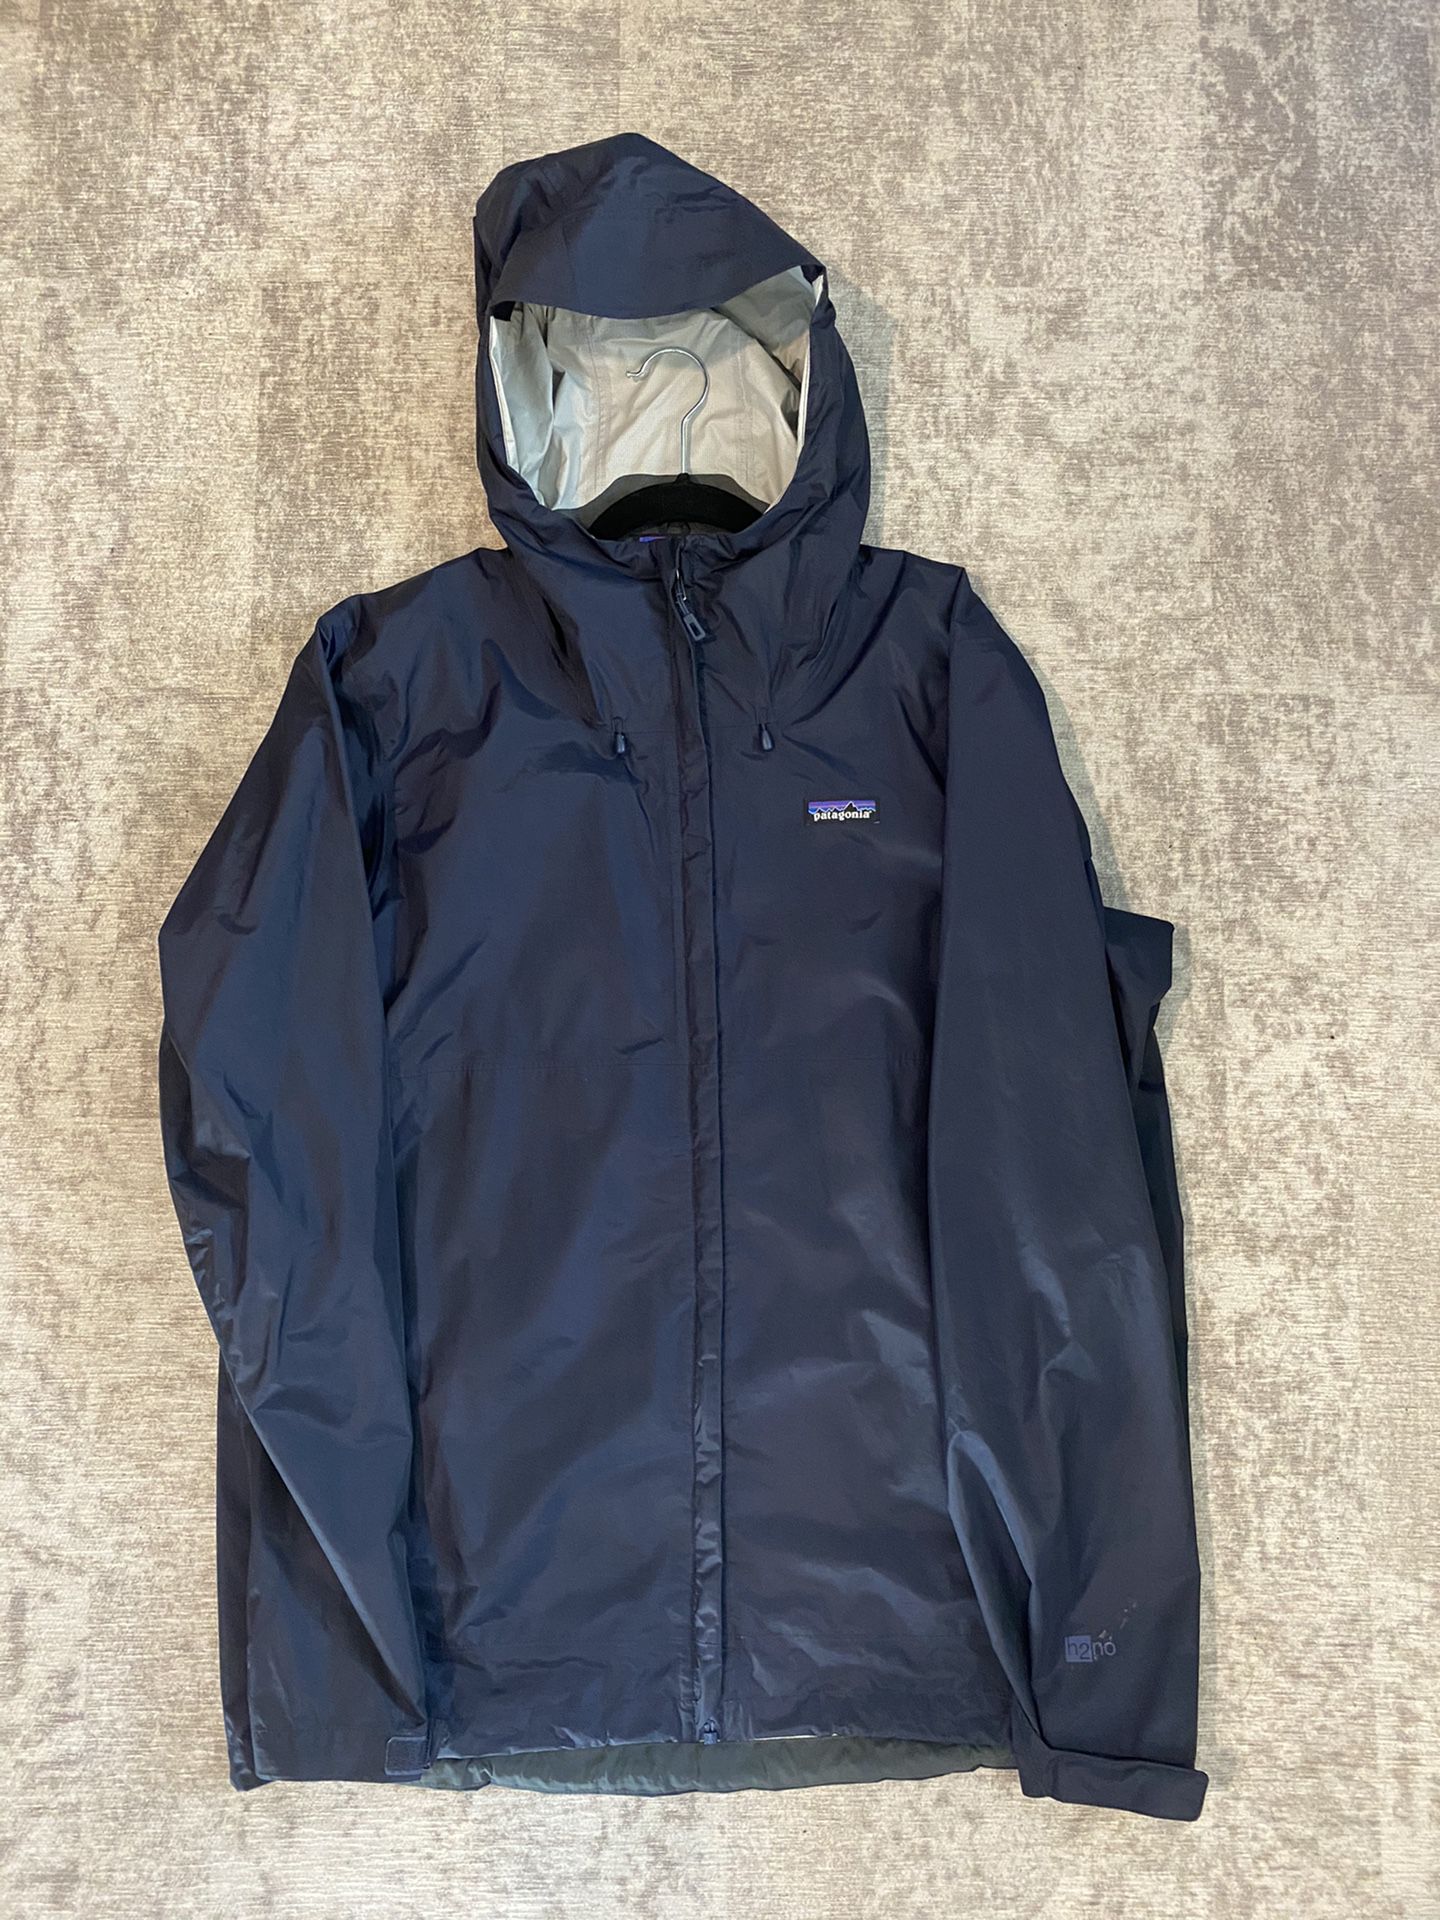 Patagonia Torrent-shell rain jacket Men’s large